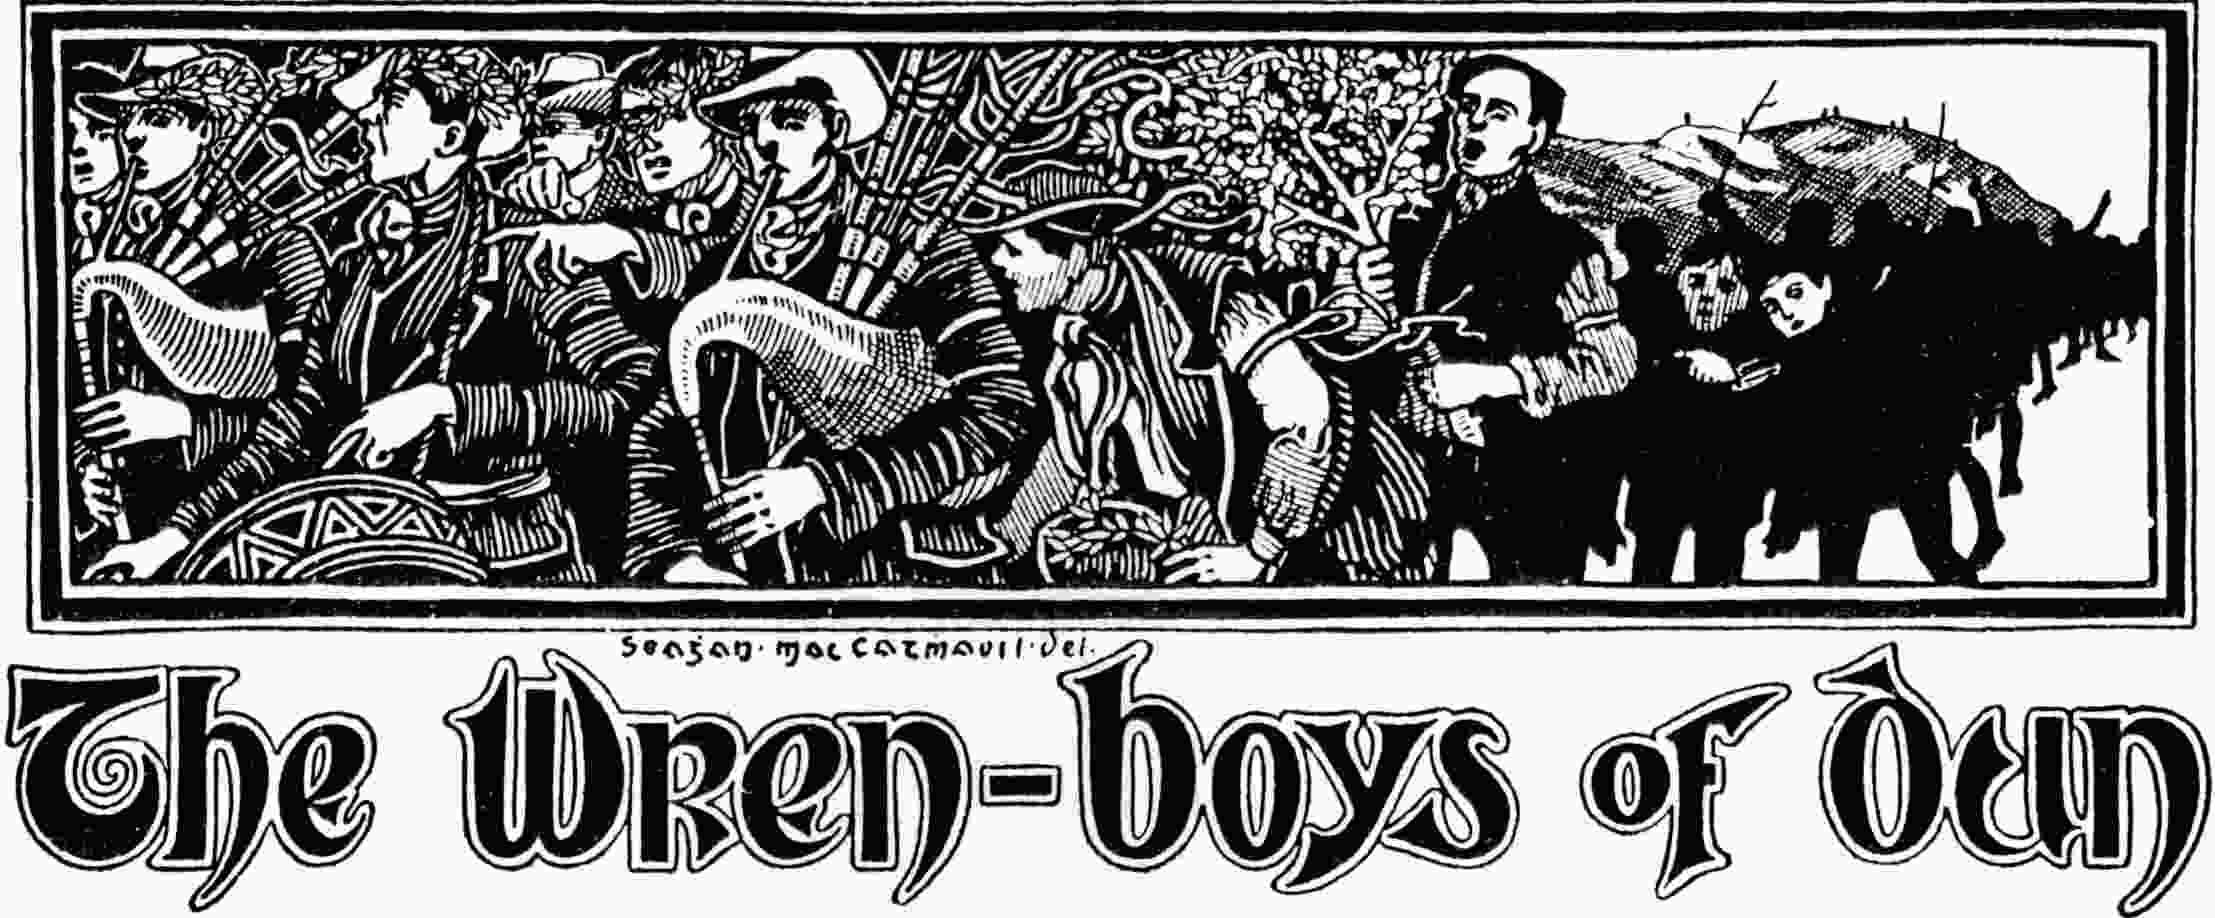 The Wren-boys of Dun by John Campbell